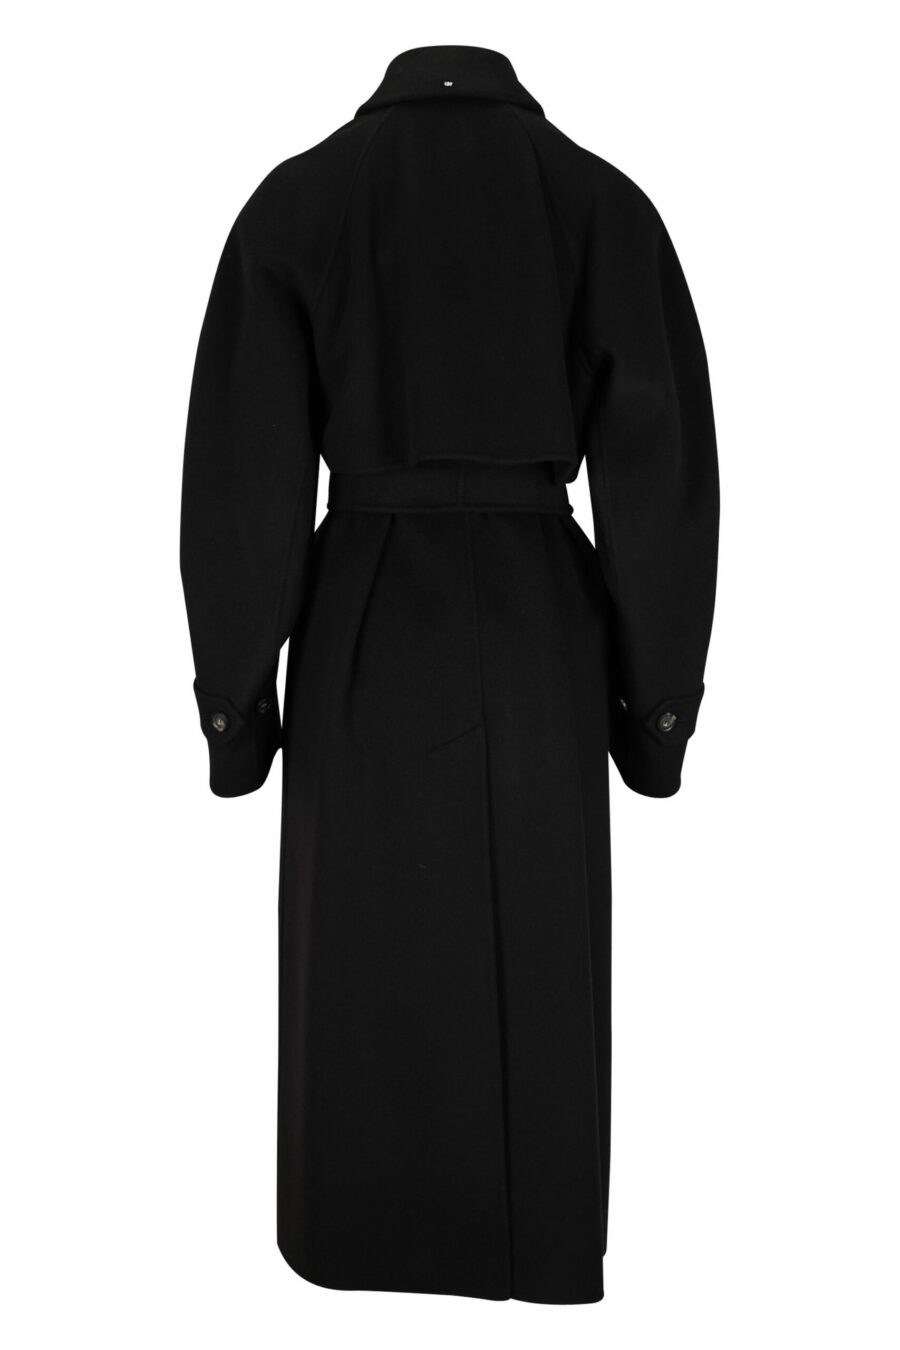 Abrigo negro largo de lana y cashmere - 20110341060042 2 scaled